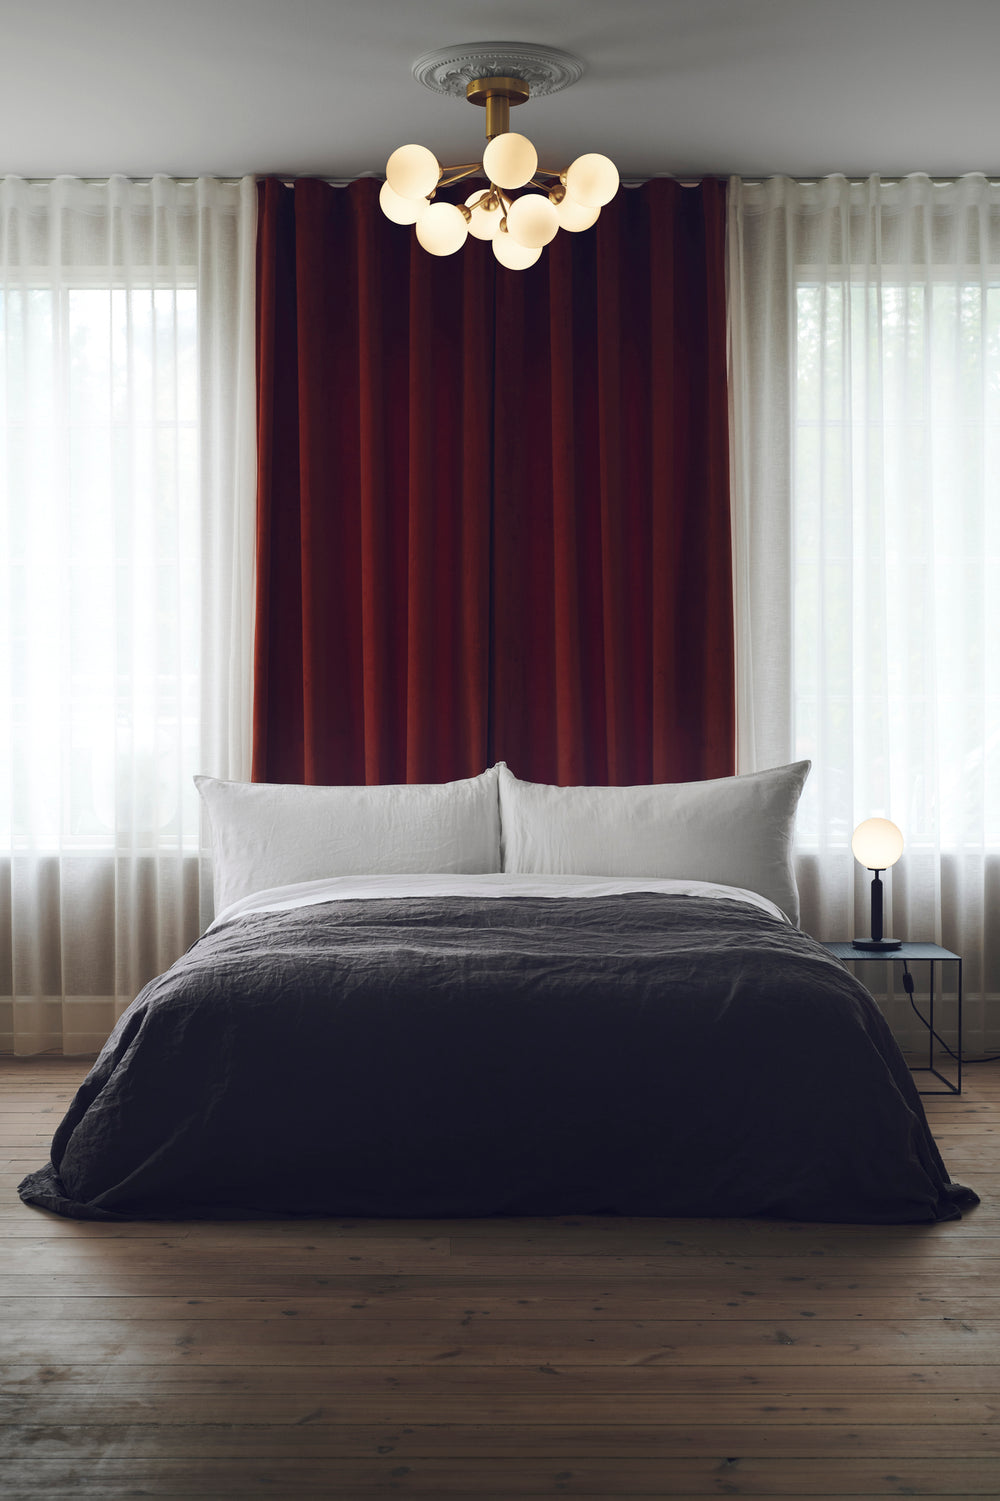 Lysekrone bestående af runde skærme i opalglas samt messingfarvet krone, over seng i soveværelse